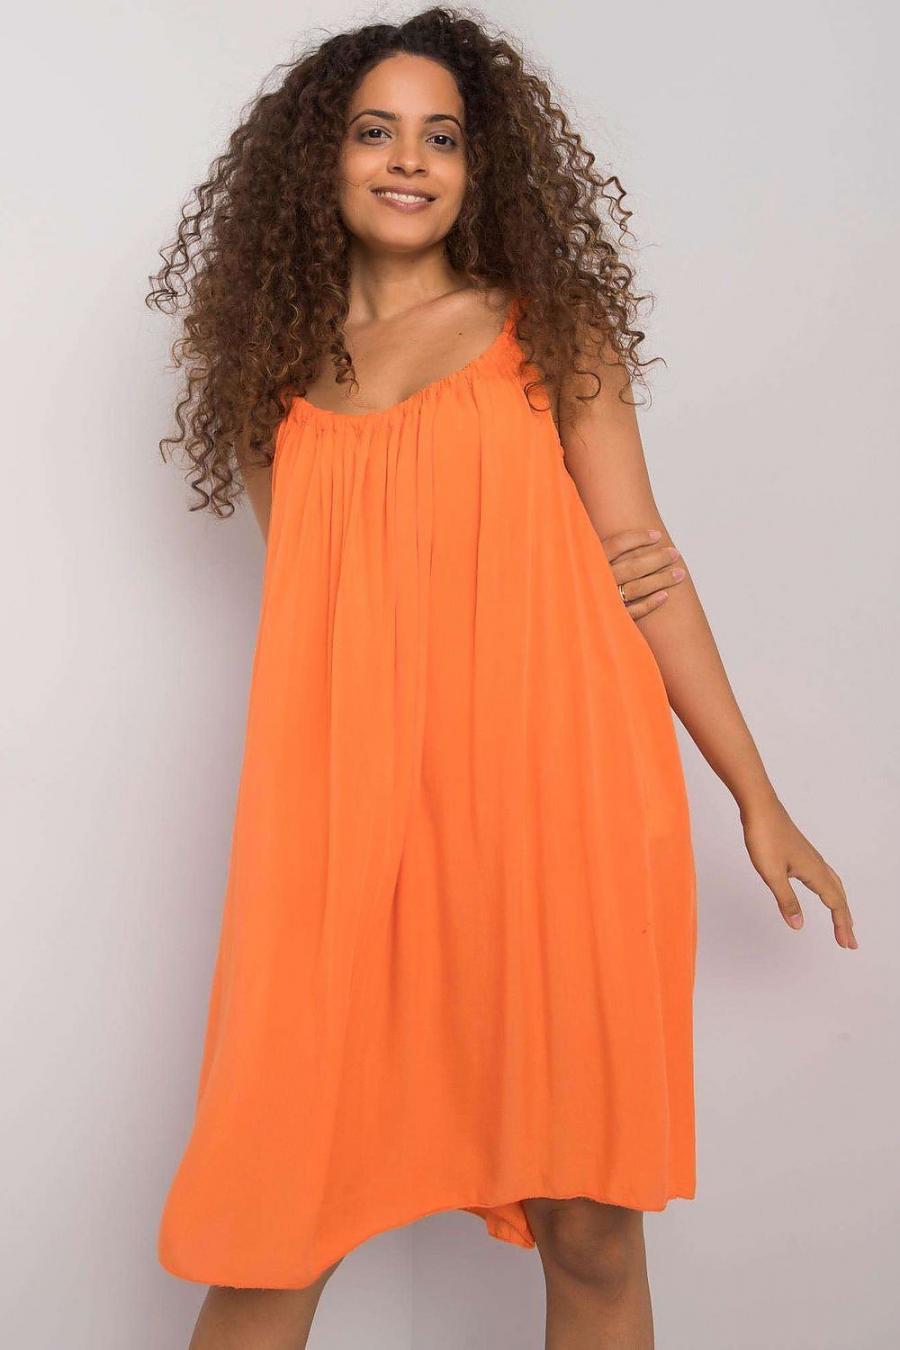 Ostatní značky šaty dámské 165036 - Oranžová - velikost M